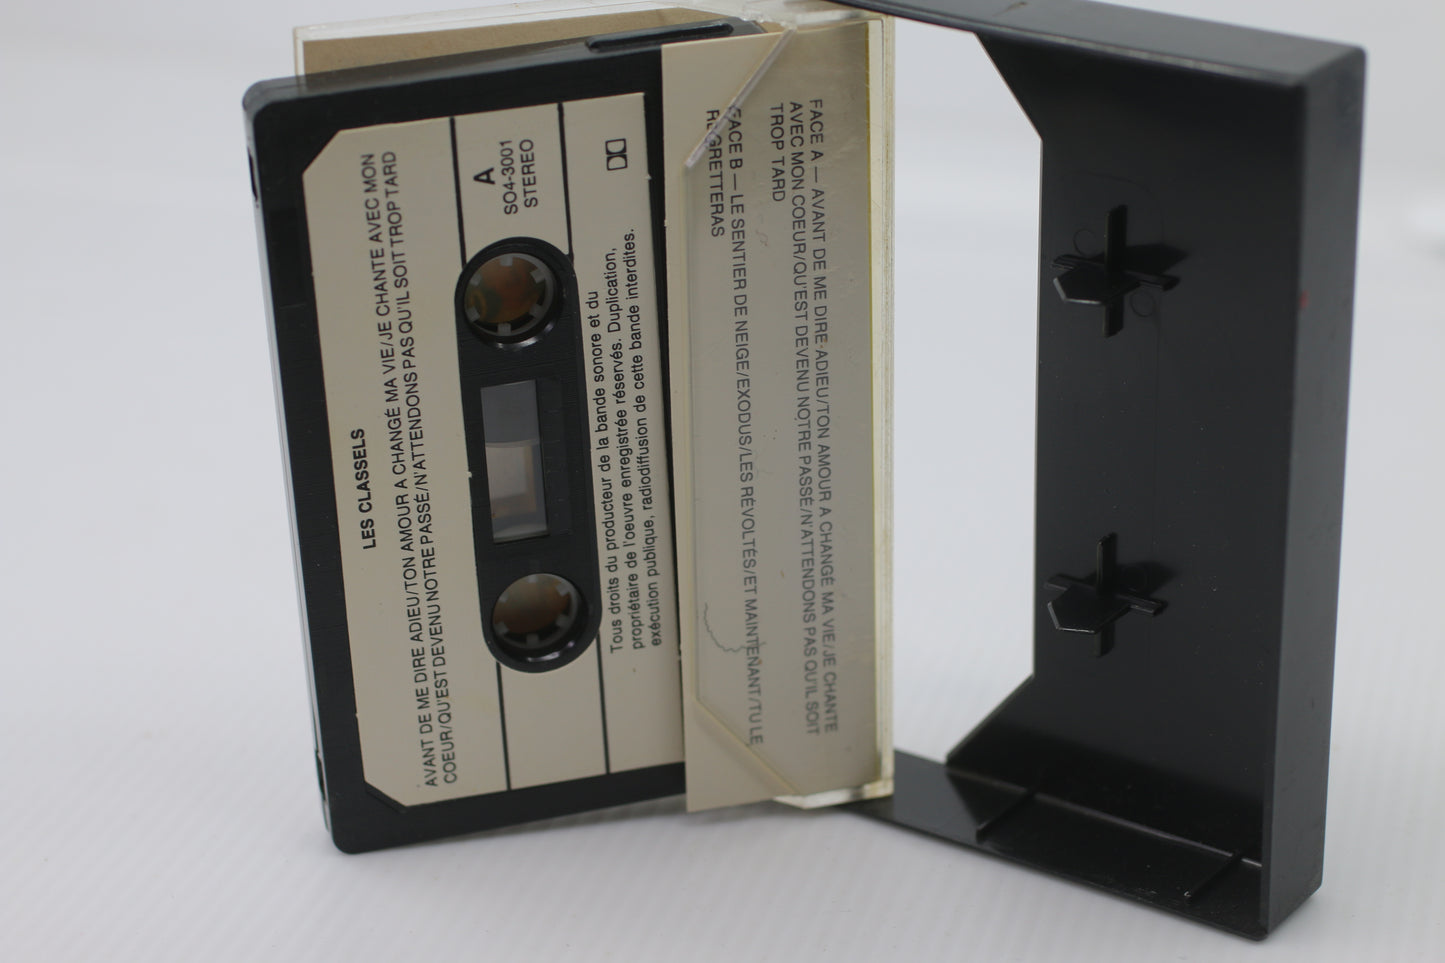 VTG cassette les classels les plus belles chansons Vintage SO4-3001 stereo